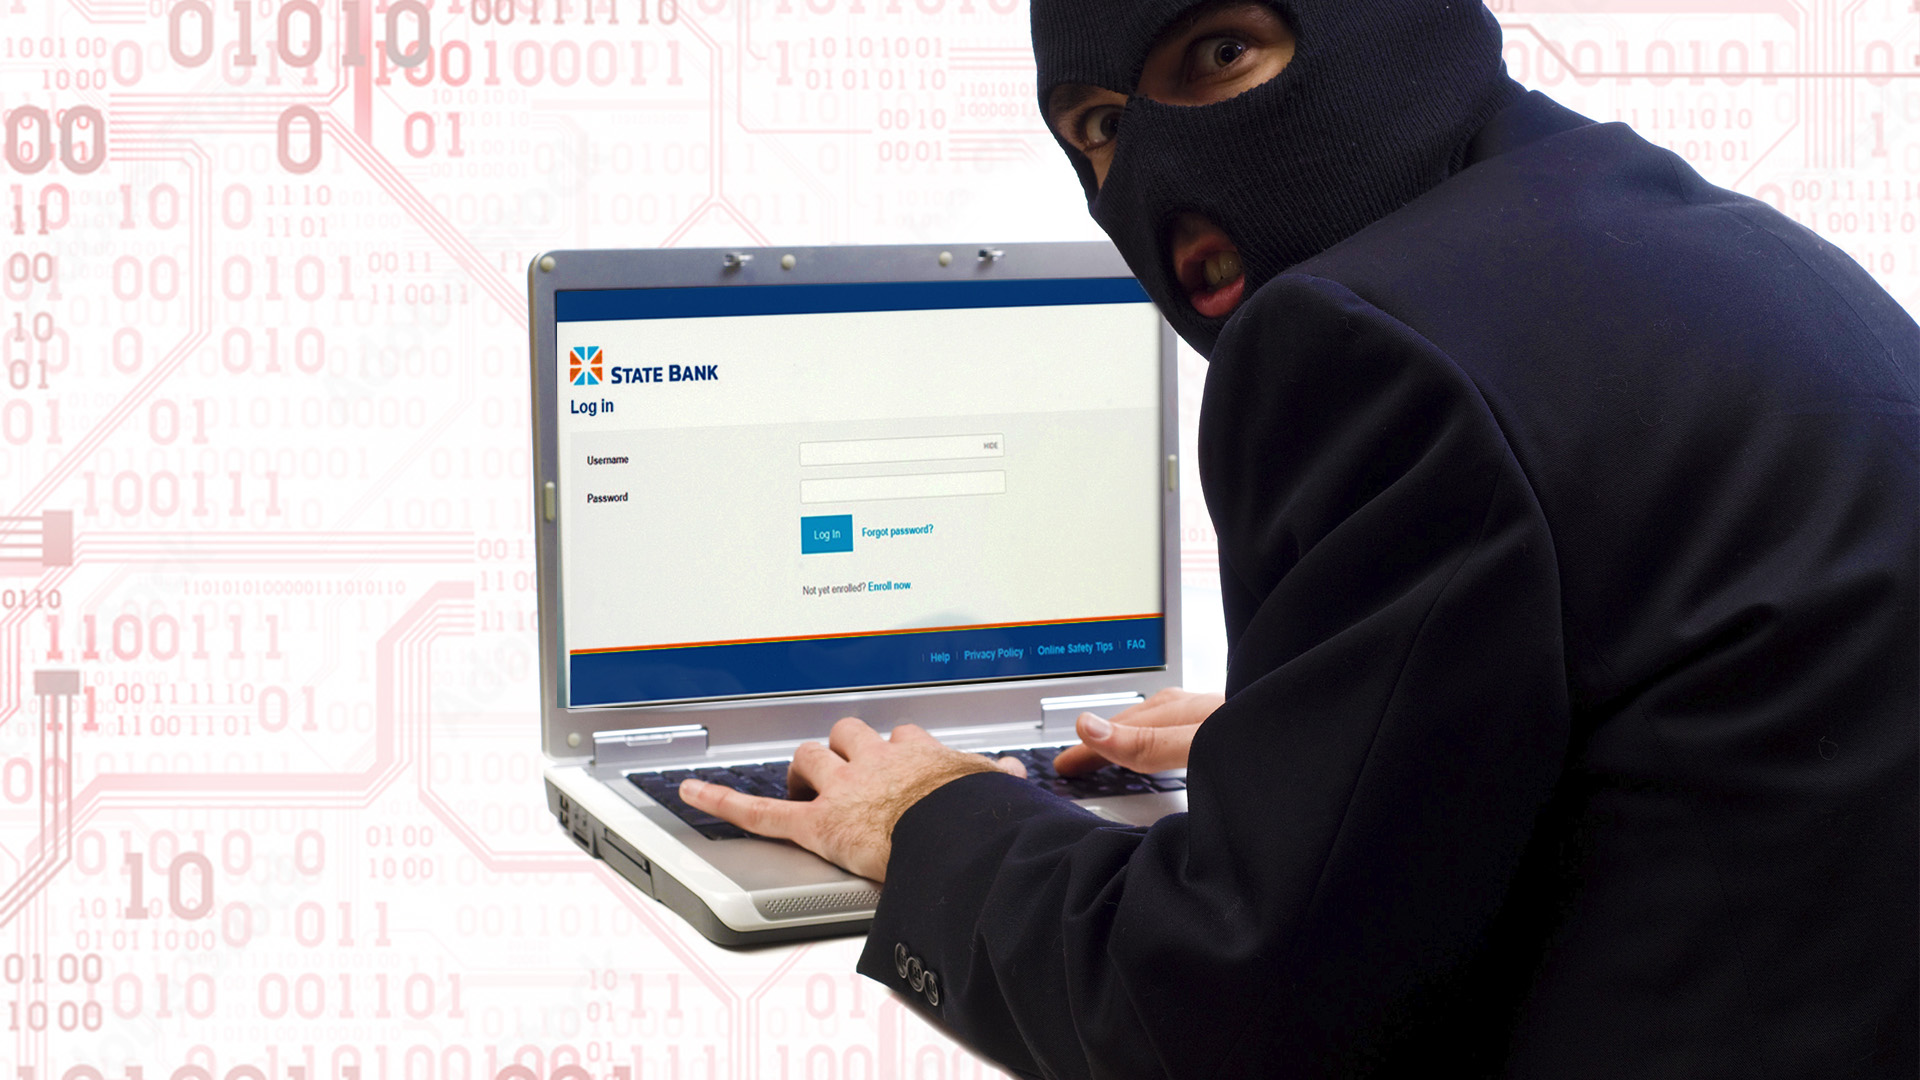 I criminali informatici usano falsi profili bancari per rubare denaro